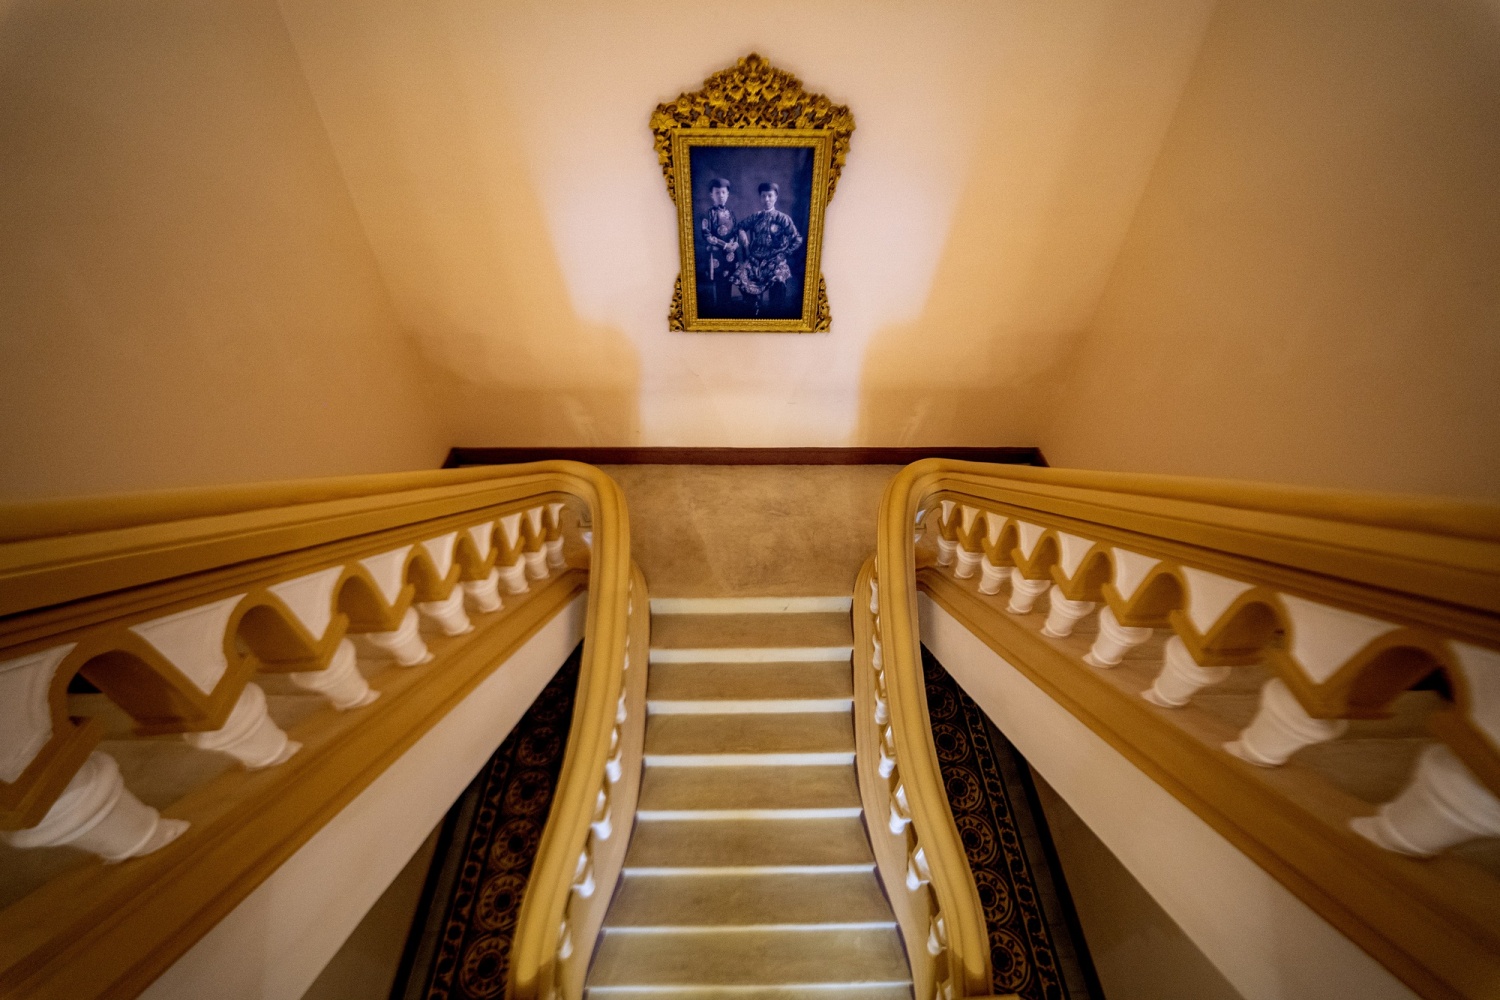 Cầu thang bên trong cung điện - Ảnh: VGP/Lê Hoàng